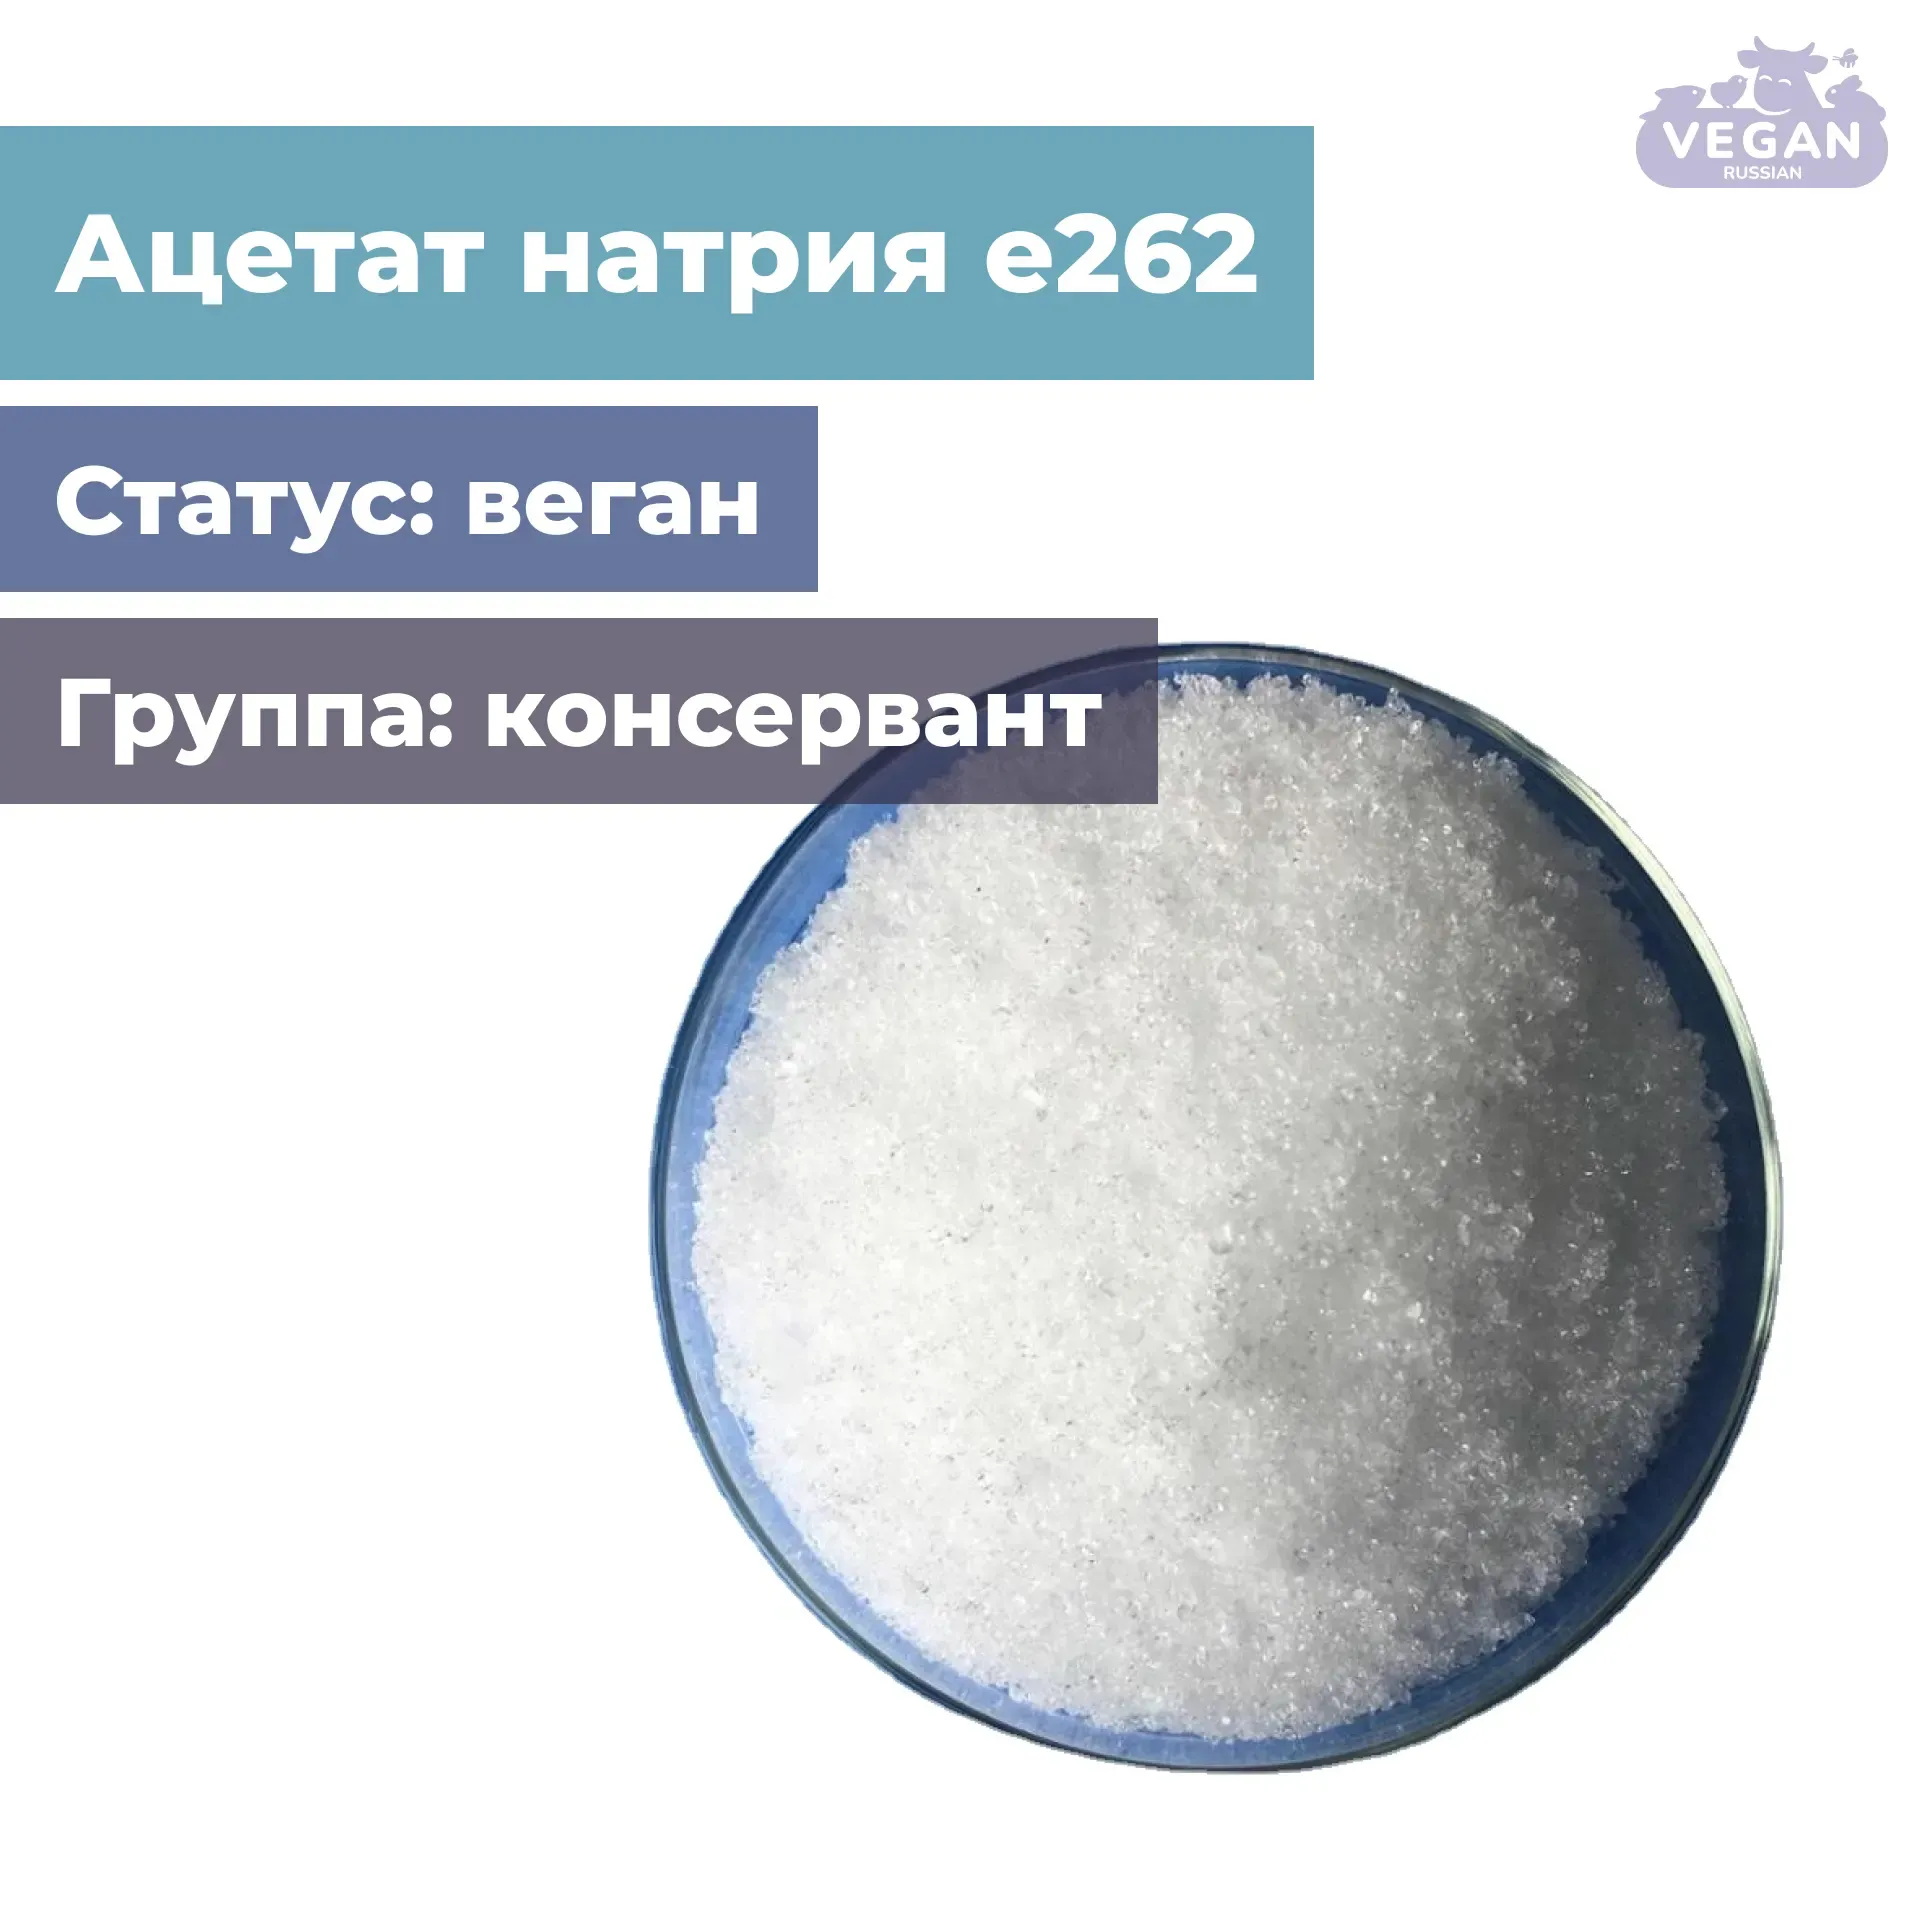 Ацетат натрия е262